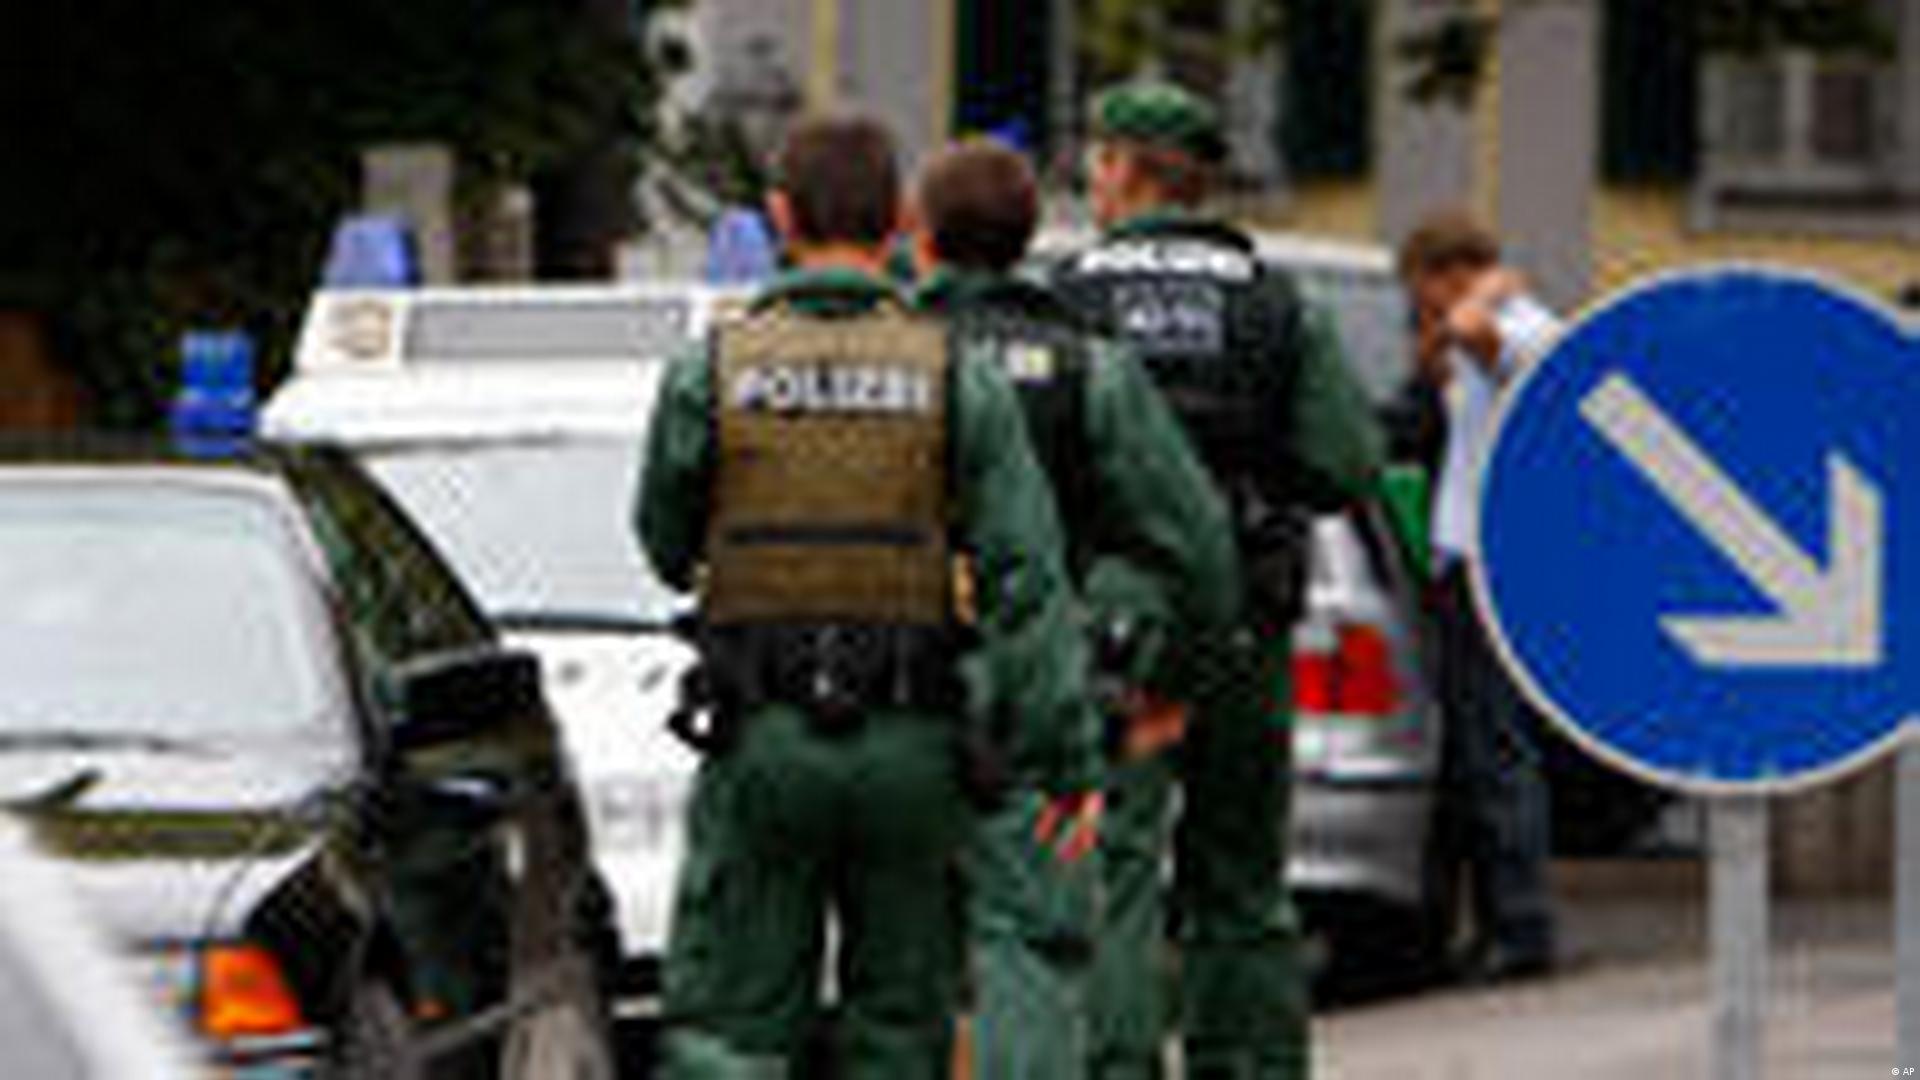 Polizei (Deutschland) – Wikipedia